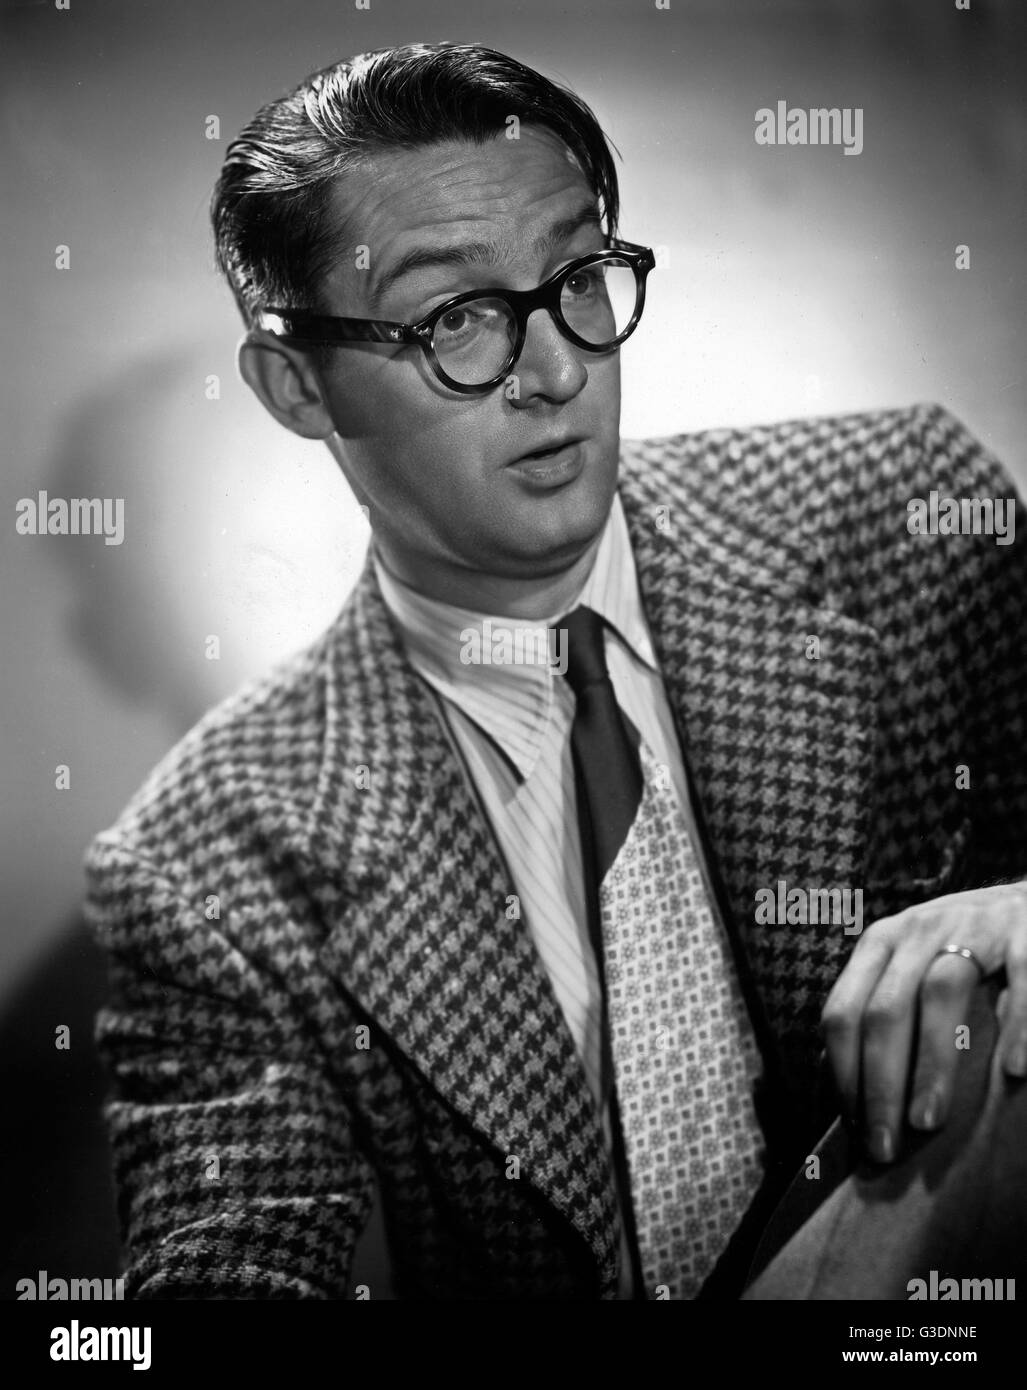 Der amerikanische Schauspieler, Komiker und Musiker Steve Allen, Amerika 1950er Jahre. American, actor, singer and comedian Steve Allen, America 1950s. Stock Photo